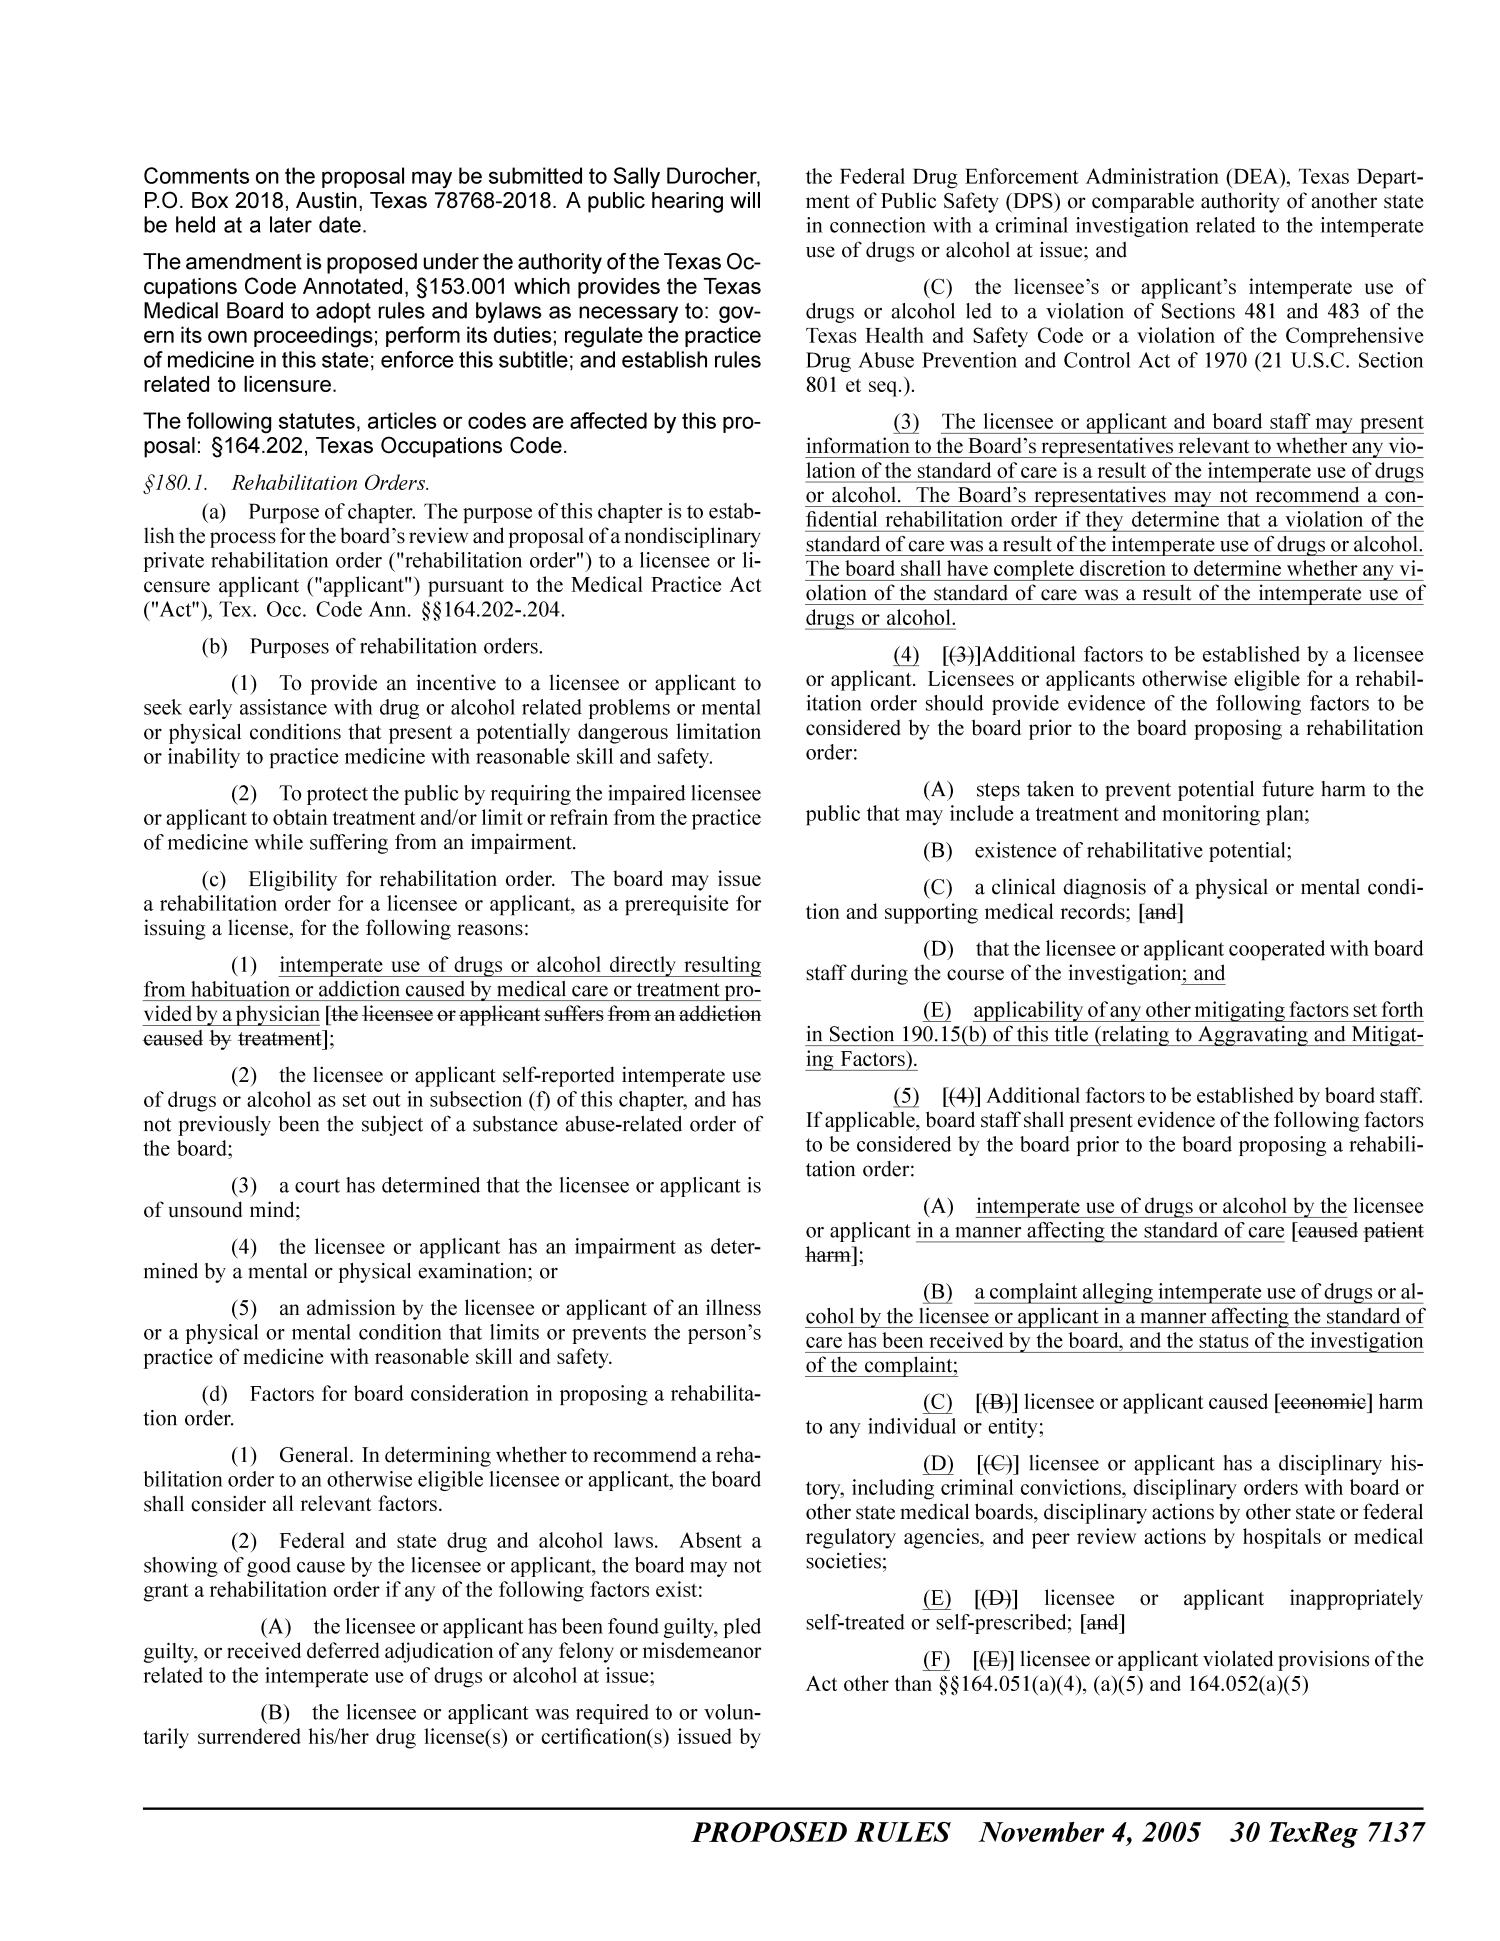 Texas Register, Volume 30, Number 44, Pages 7095-7310, November 4, 2005
                                                
                                                    7137
                                                